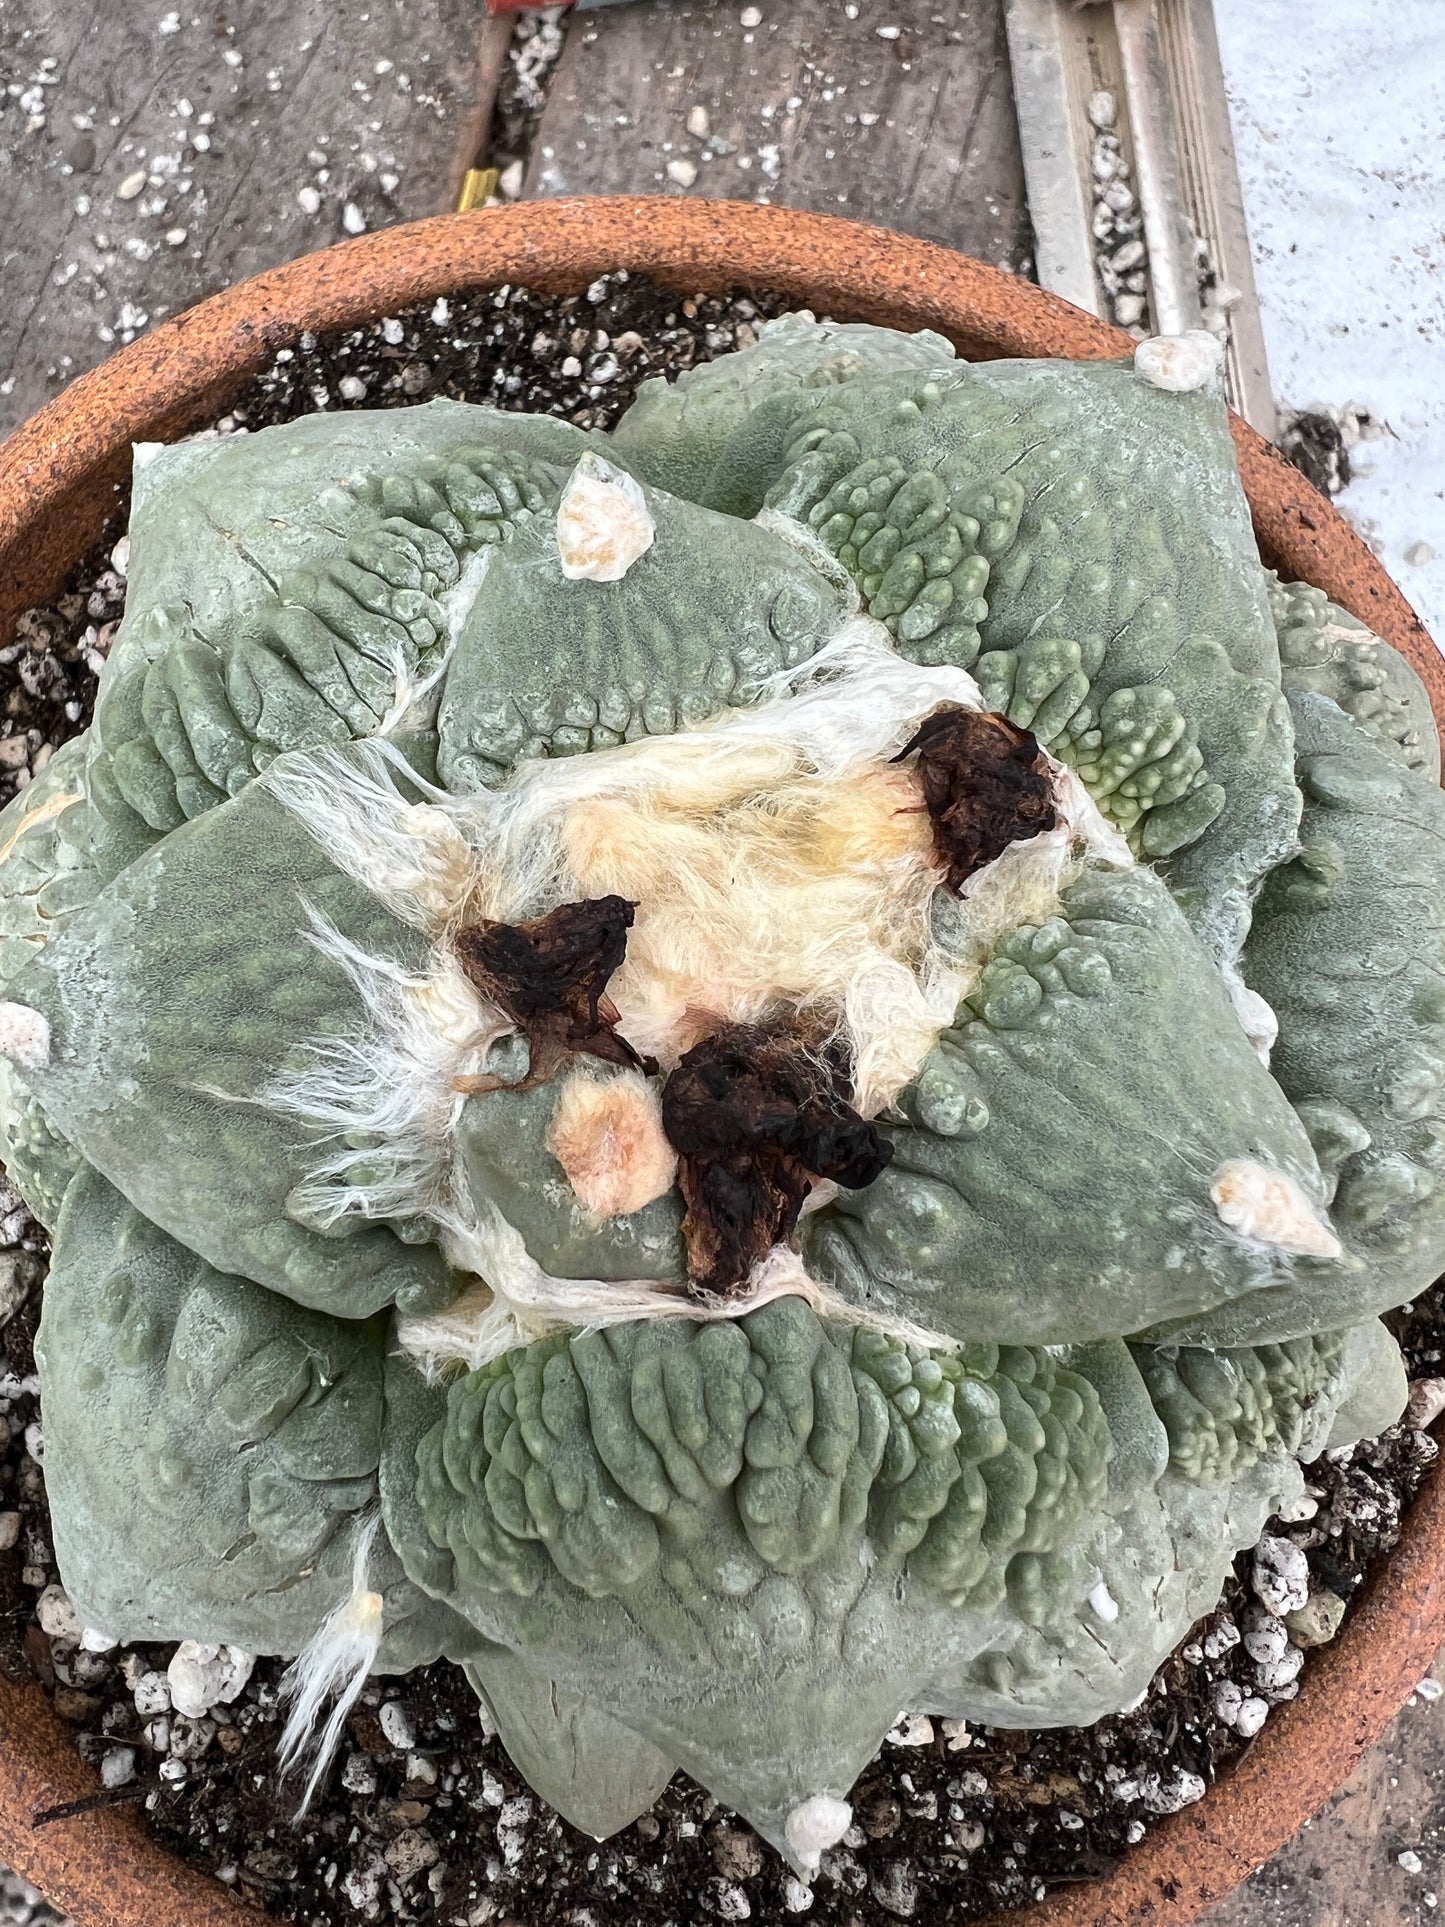 Ariocarpus cauliflower specimen from bills collection shown in 7 inch pot